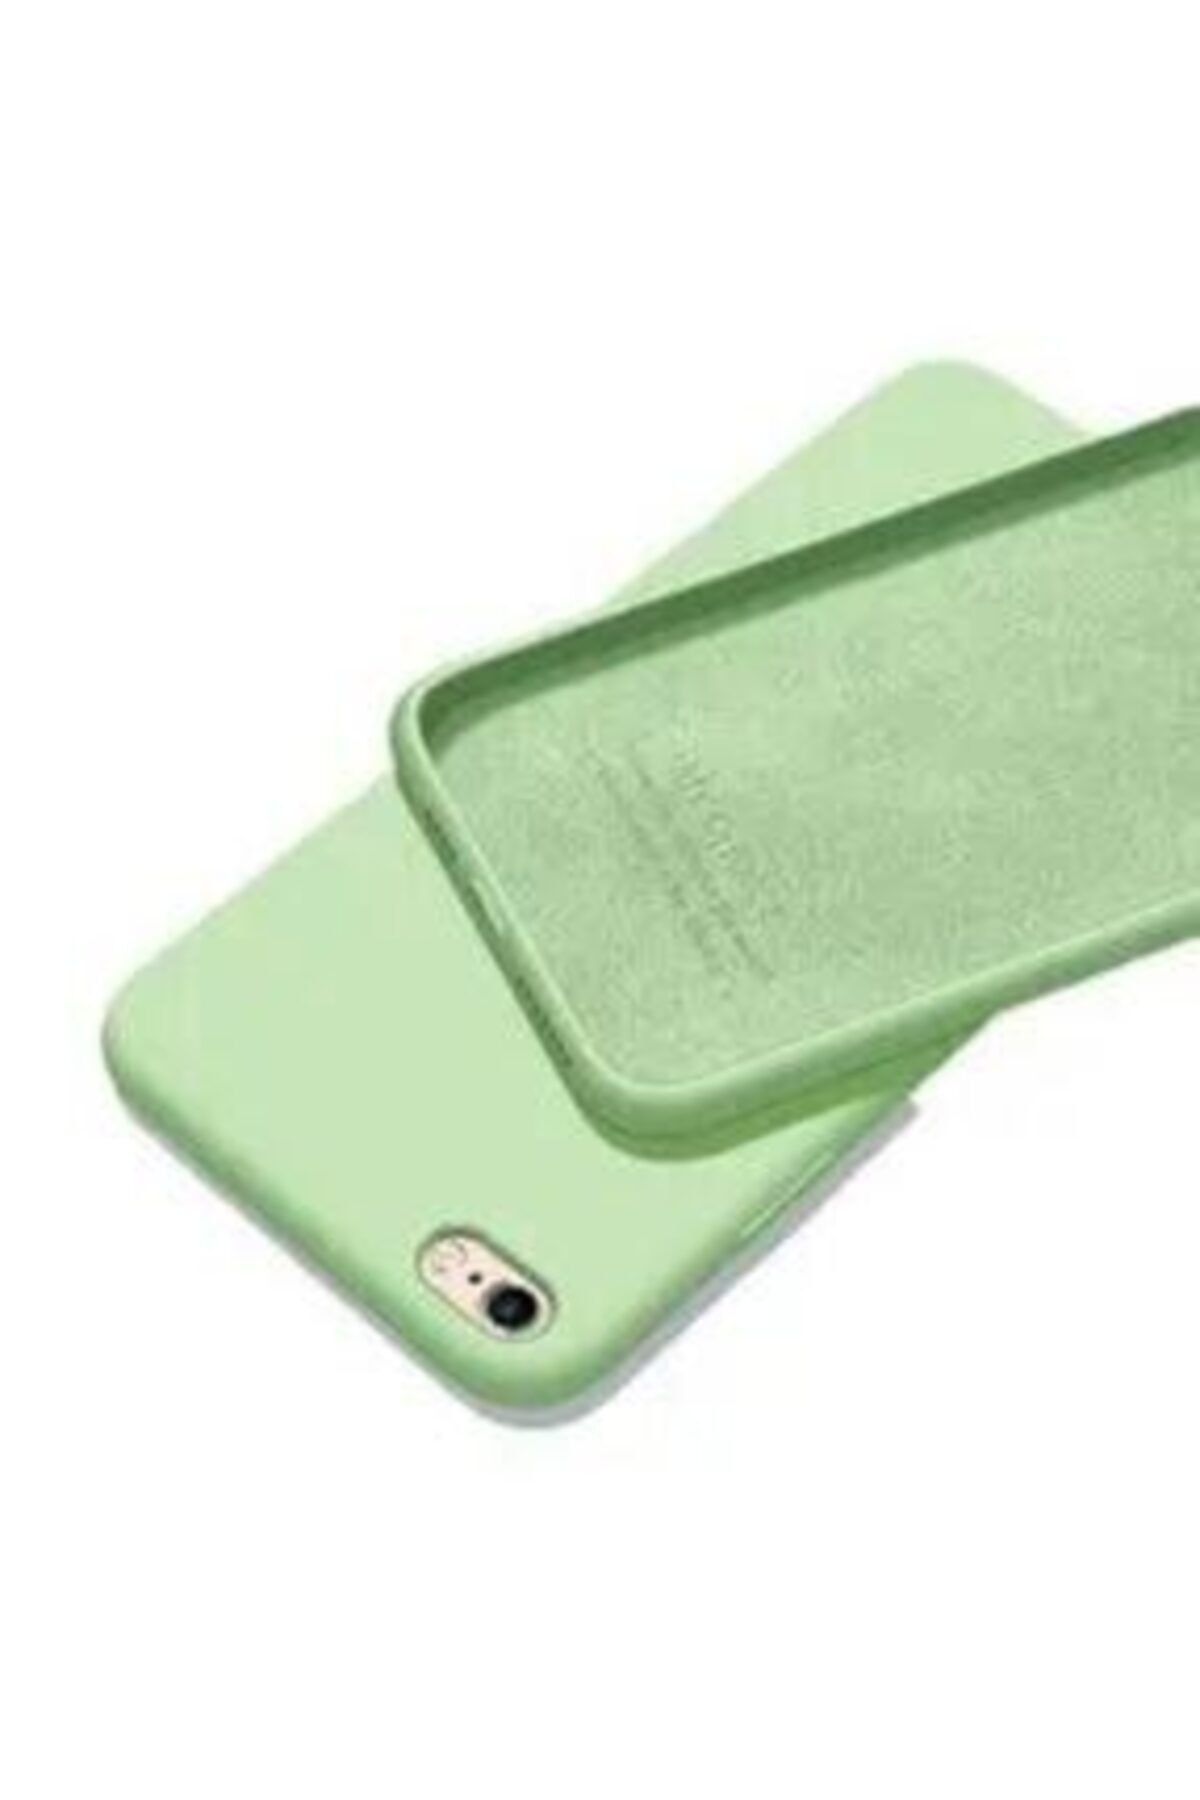 E TicaShop Apple Iphone 5 / 5s Kılıf Içi Kadife Lansman Silikon Kılıf Açık Yeşil